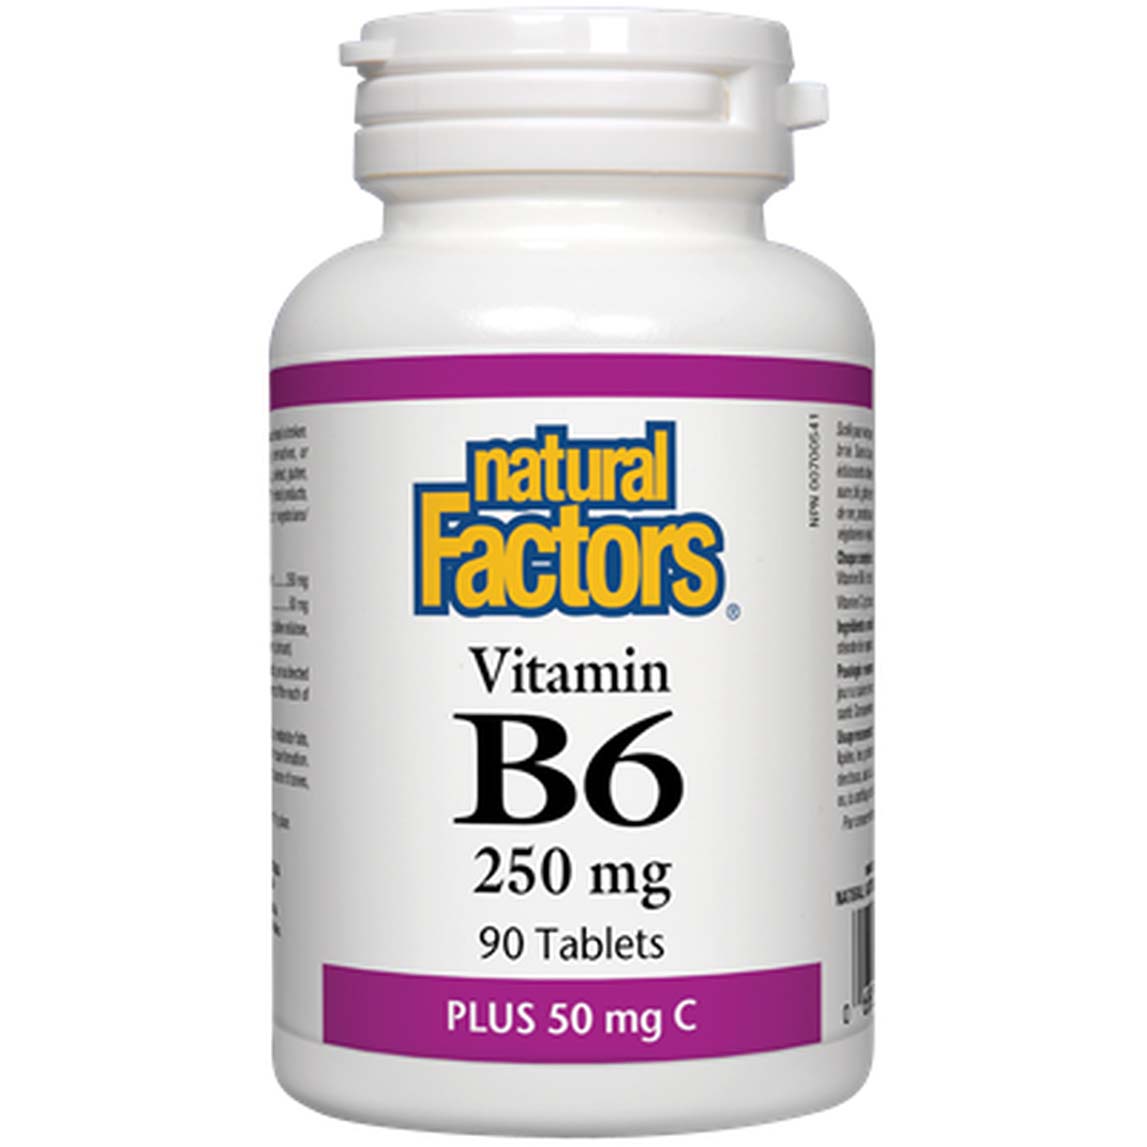 Natural Factors Vitamin B6 250 Mg Plus 50 Mg Vitamin C 90 Tablets 250 mg